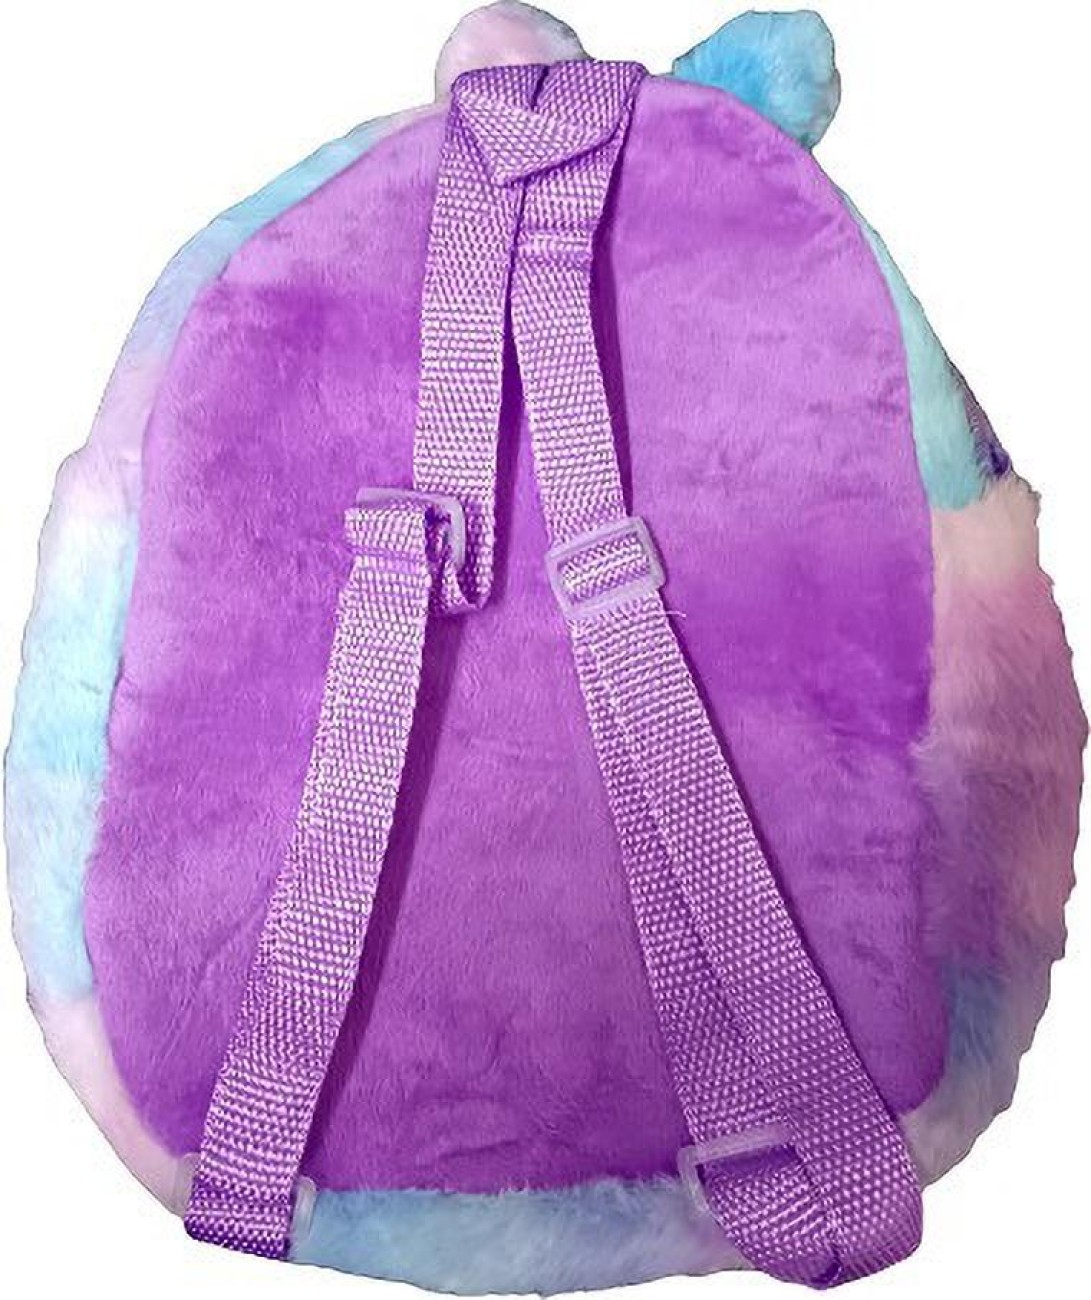 Safeseed Kitten Cat Mini Bag Backpack Kb120 With Shoulder Strap For  Kindergarten Nursery Kids